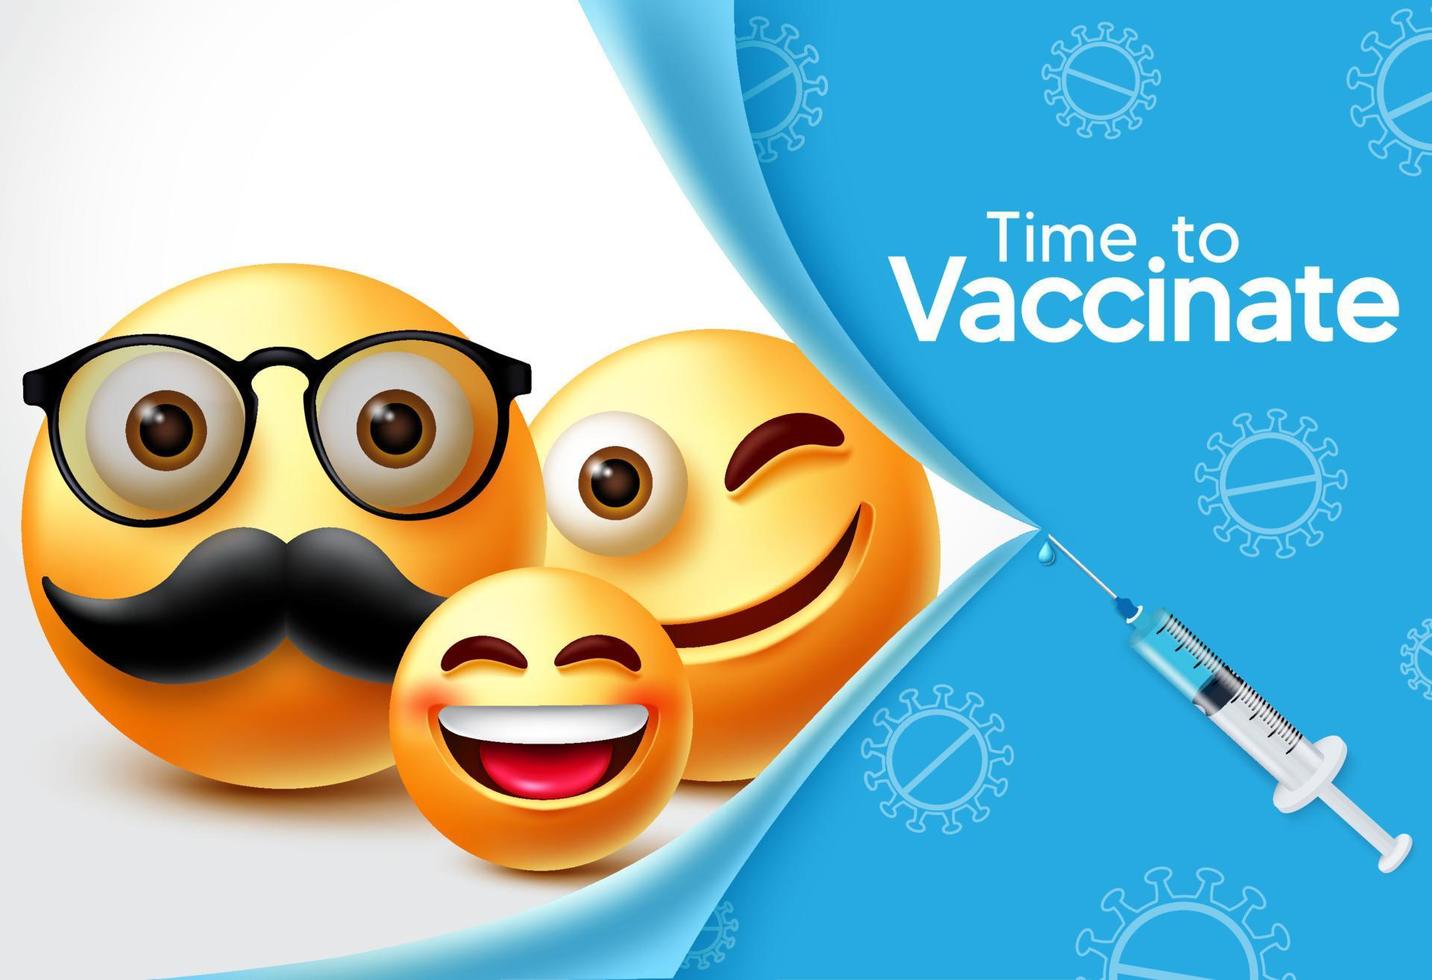 conception de bannière de vecteur de vaccin de caractères emoji. il est temps de vacciner le texte avec le caractère emojis 3d de la famille et l'élément de seringue pour la conception de la vaccination et de la prévention de covid-19. illustration vectorielle